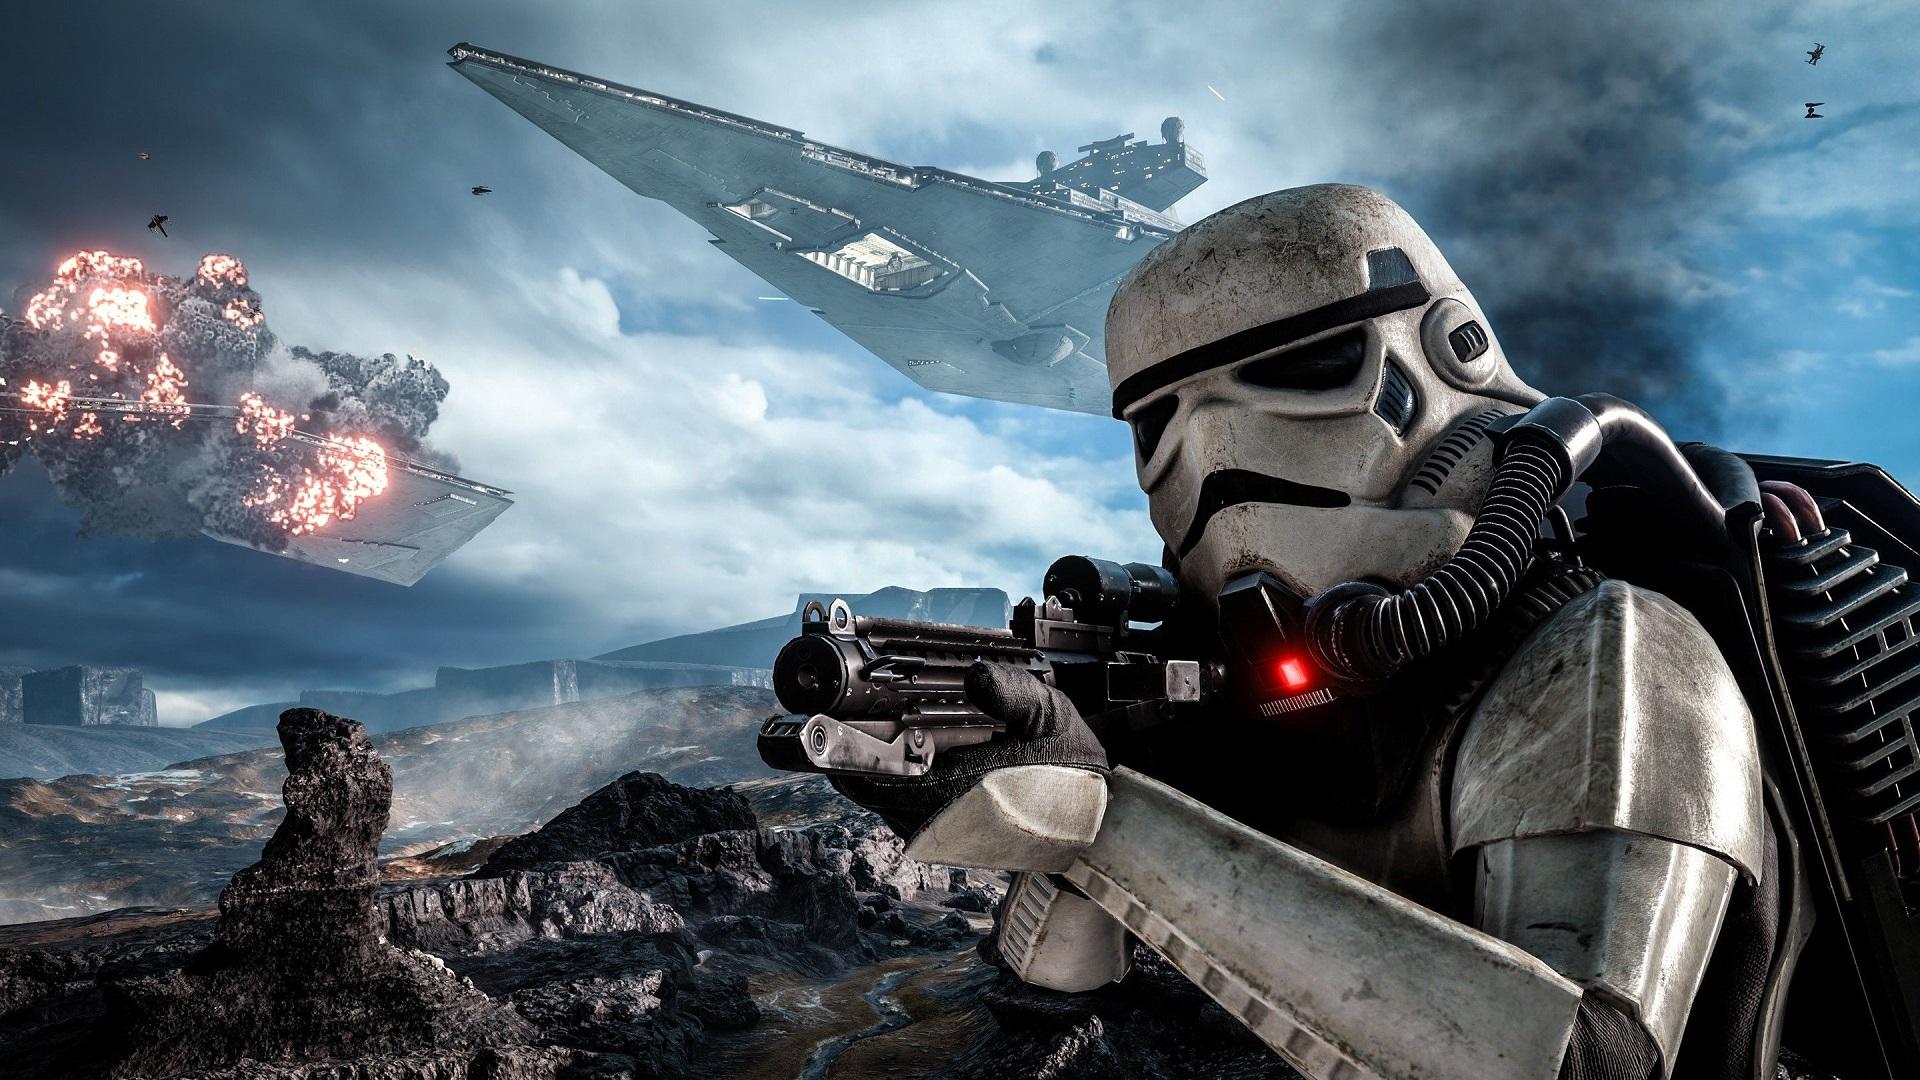 Desaťročná exkluzívna licencia na tvorbu hier Star Wars vyprší budúci rok. EA ale napriek tomu chystá ďalšie projekty.